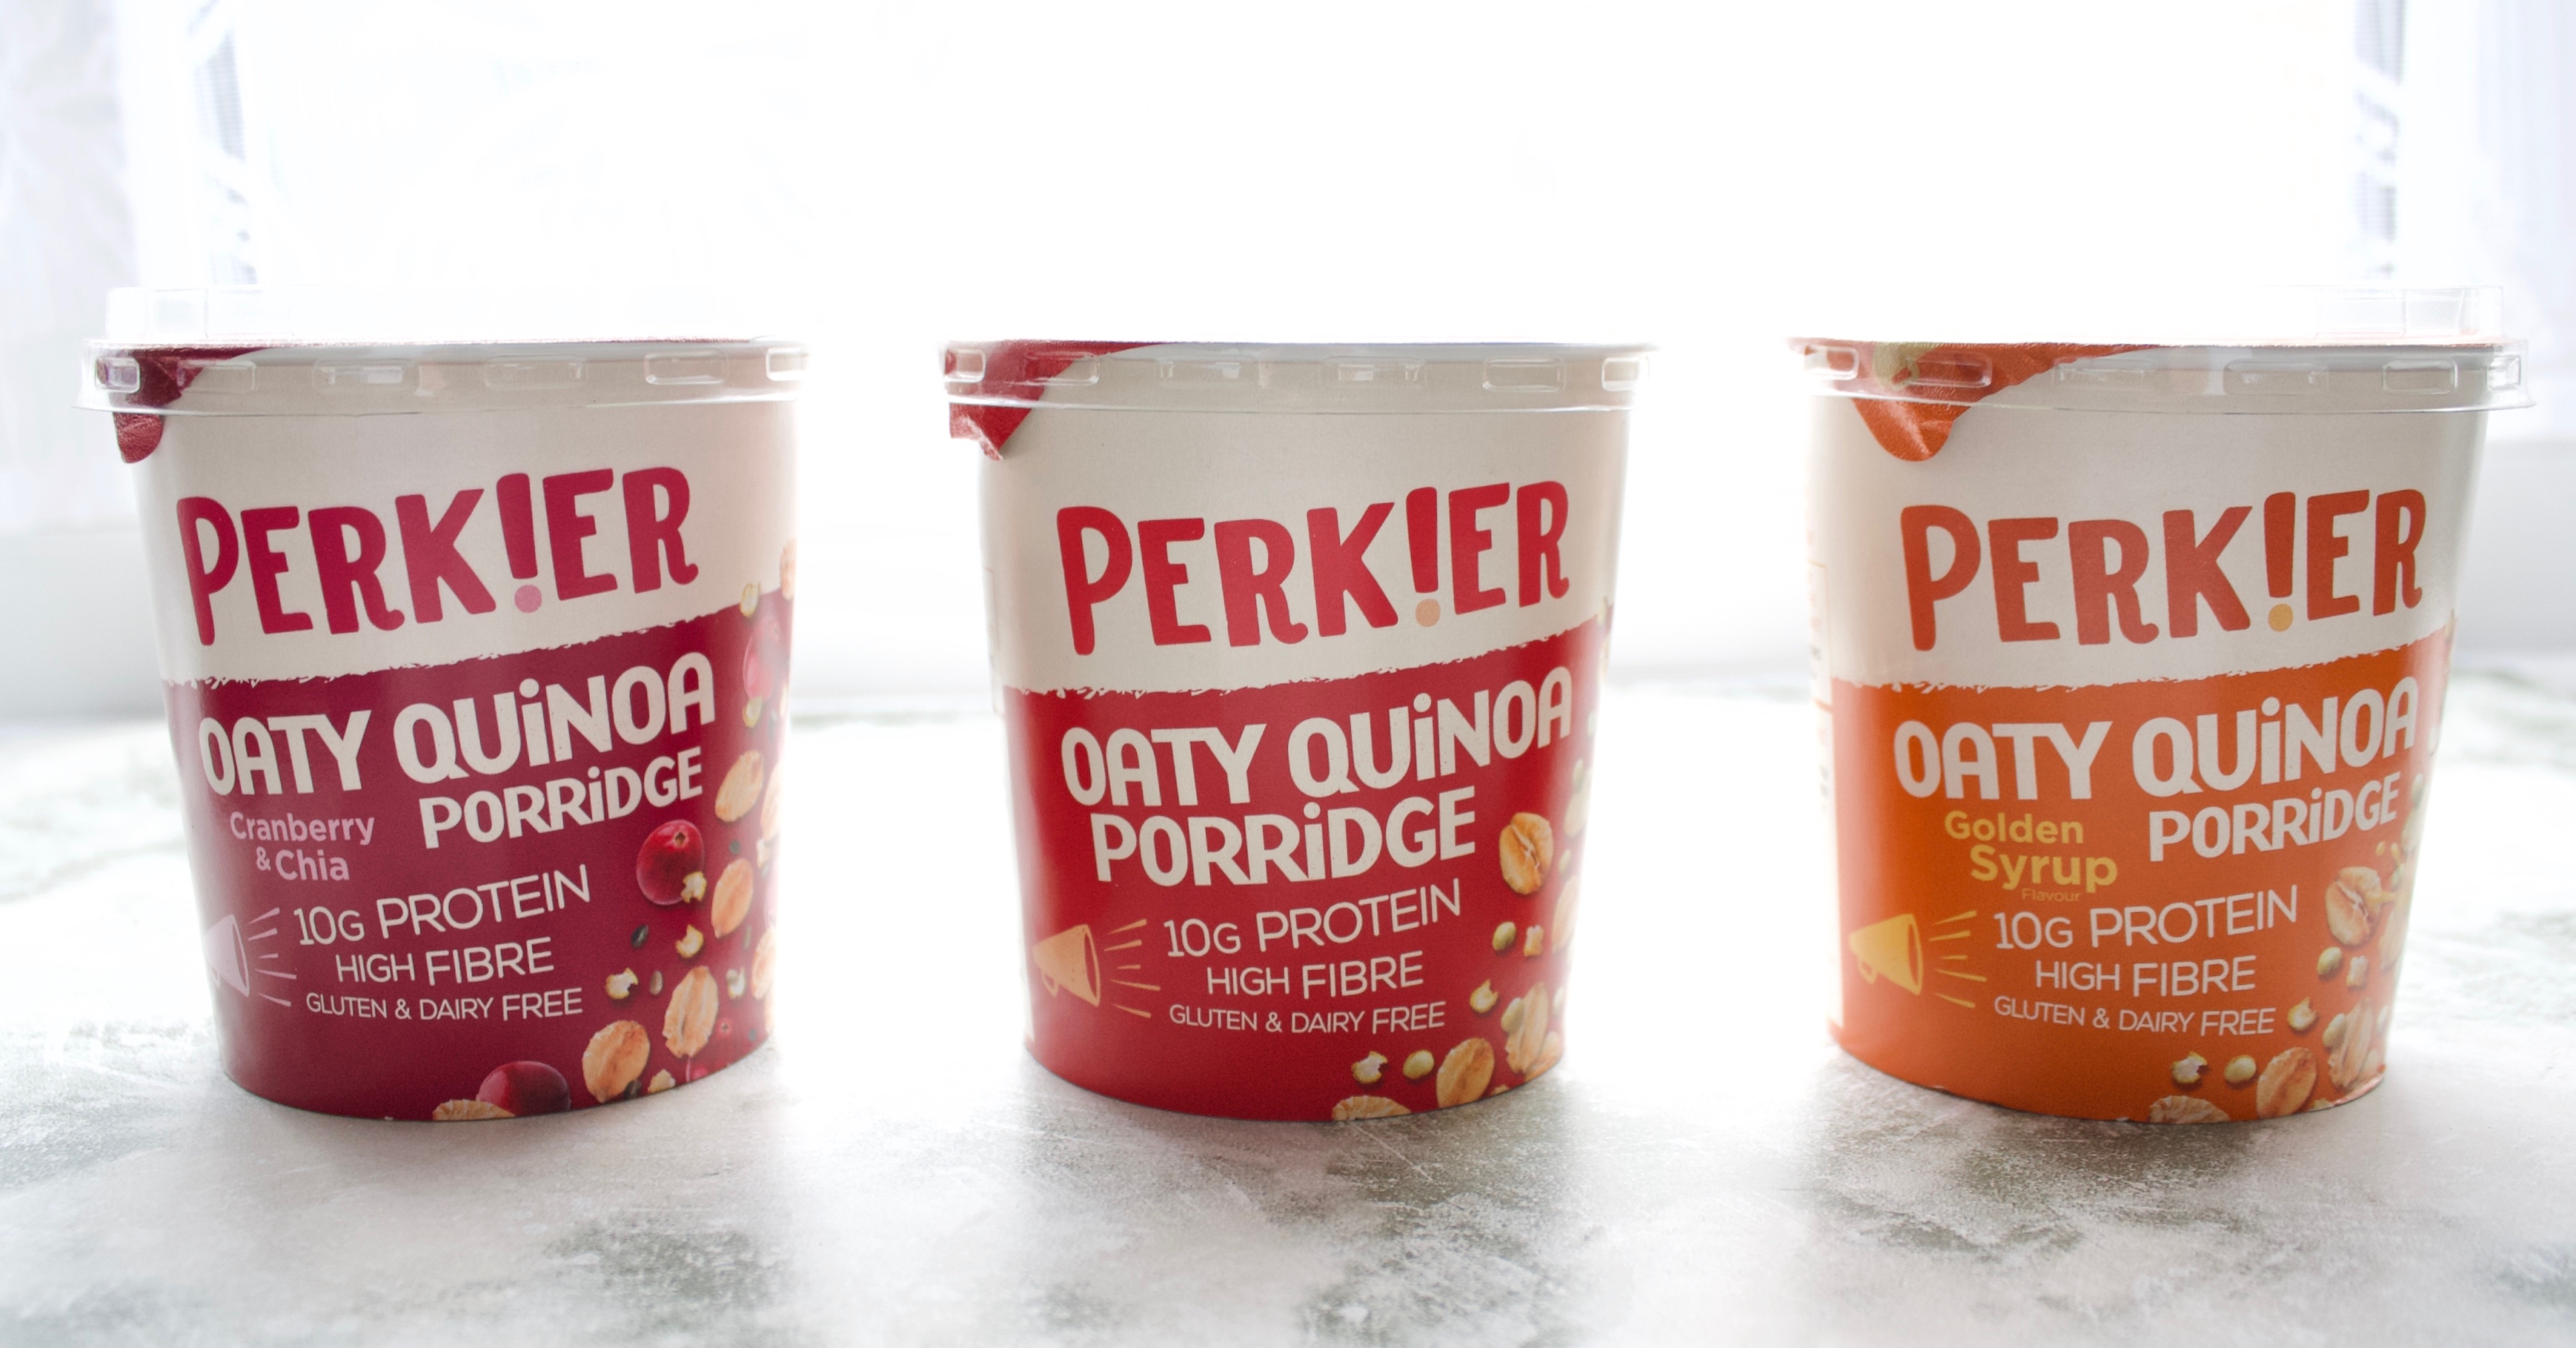 Perkier Oaty Quinoa Porridge Pots Review